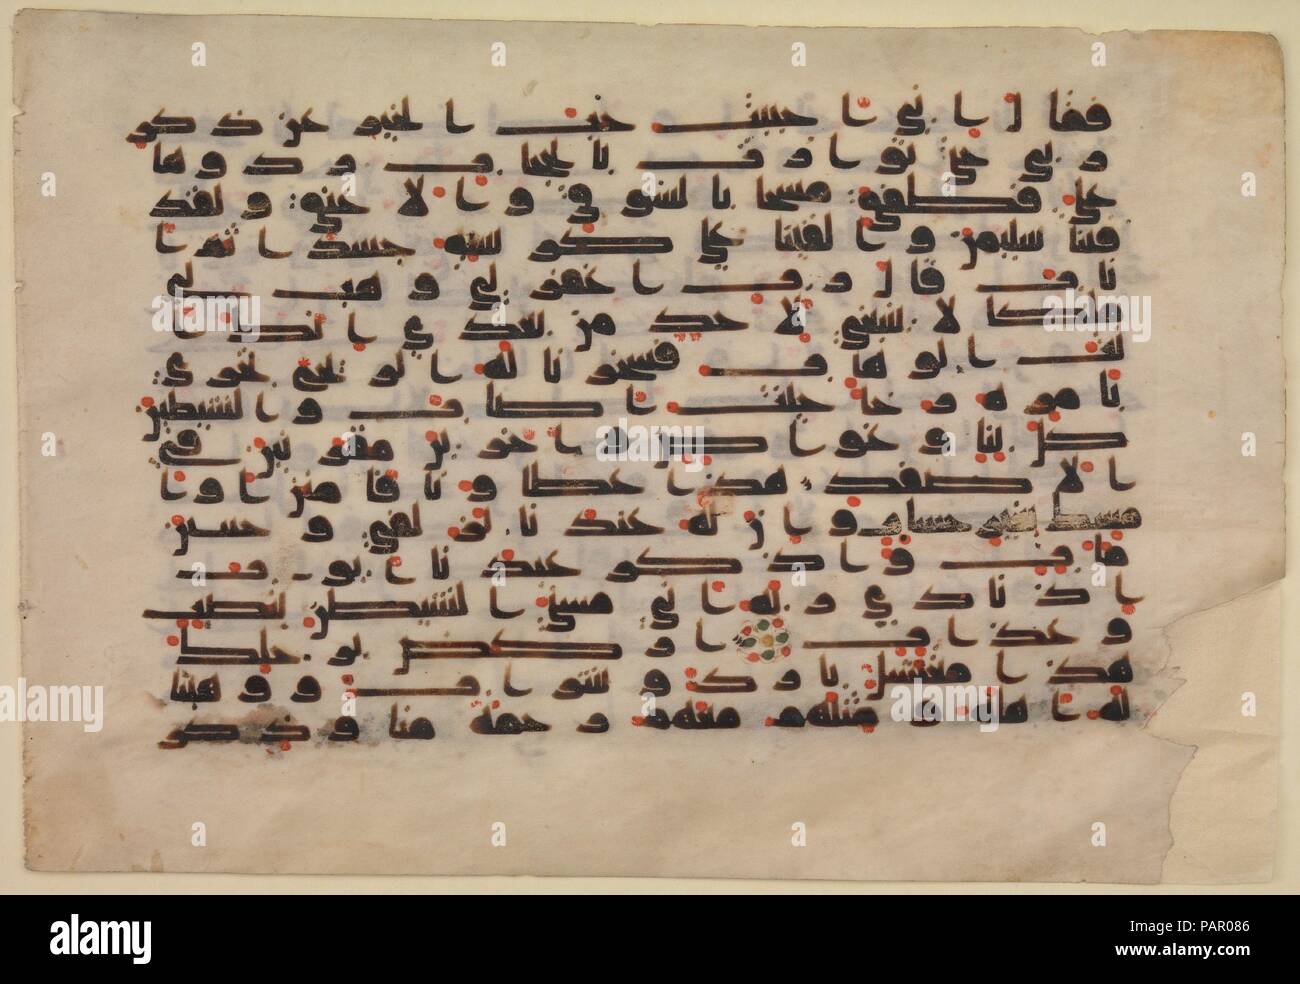 Folio à partir d'un Coran manuscrit. Dimensions : H. 8 1/2 in. (21,6 cm) O. 5 3/4 in. (14,6 cm). Date : 8ème-9ème siècle. Bien que le plus ancien à avoir survécu Qur'ans ont été copiés dans un grand script simplifié, appelé hijazi sur un parchemin vertical support , de telles préférences ont été abandonnés à l'époque omeyyade les scribes développé le format horizontal et le type de caractères coufiques vu dans ce folio. Le large, s'étale la calligraphie allongée élégamment à travers le parchemin formatée à l'horizontale comme les scribes manipuler la largeur de chacune des lettres pour remplir les lignes. Les premiers points d'un manque de script Banque D'Images